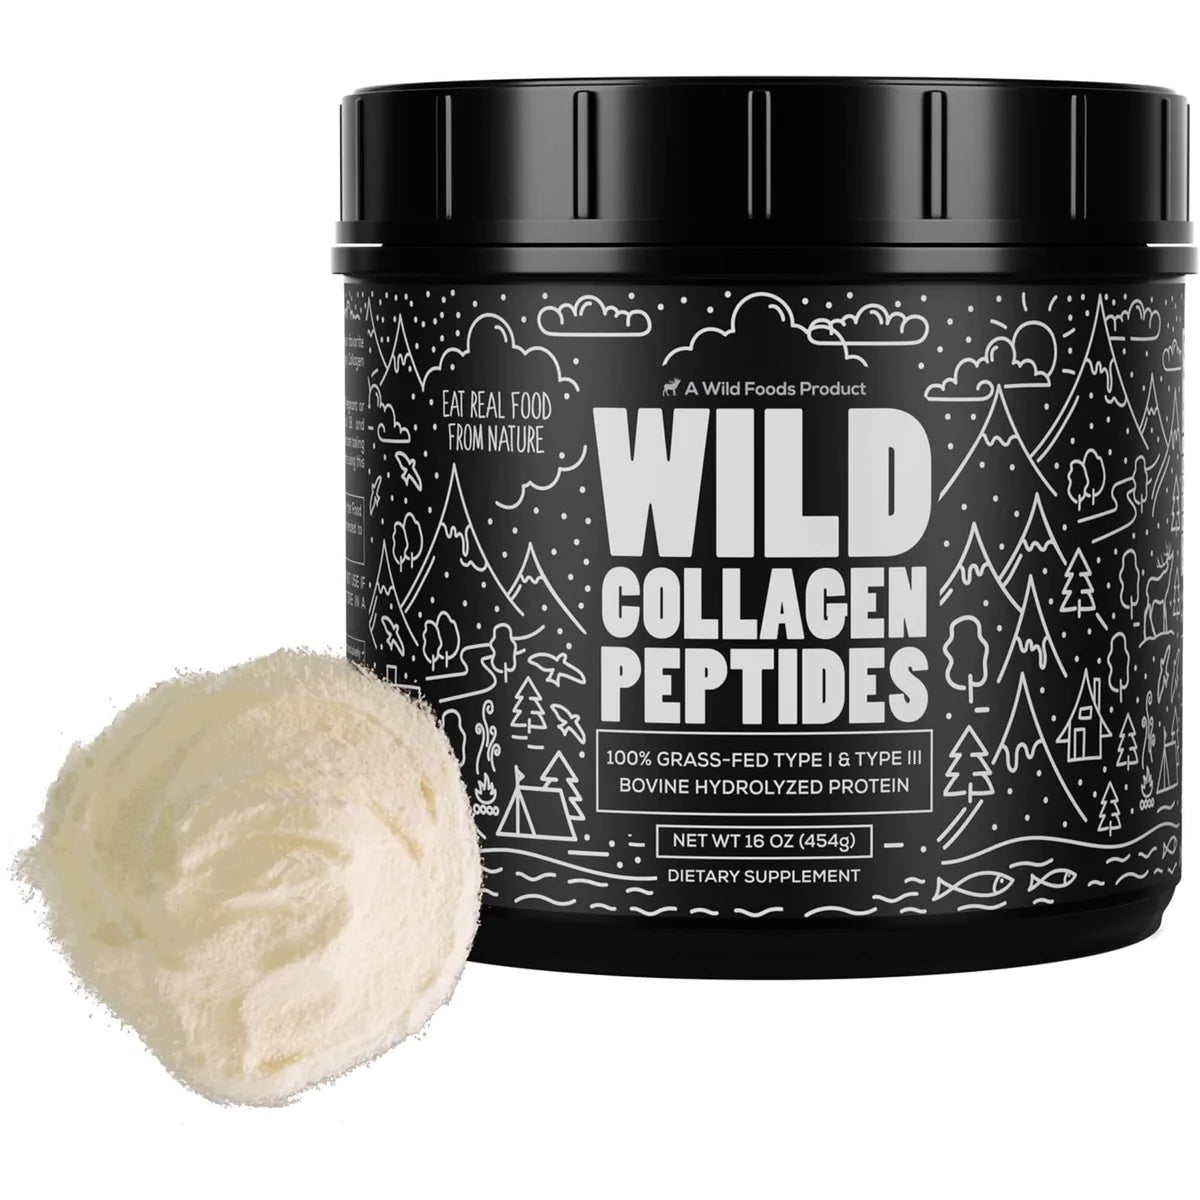 Wild Foods Wild Collagen Peptides Powder